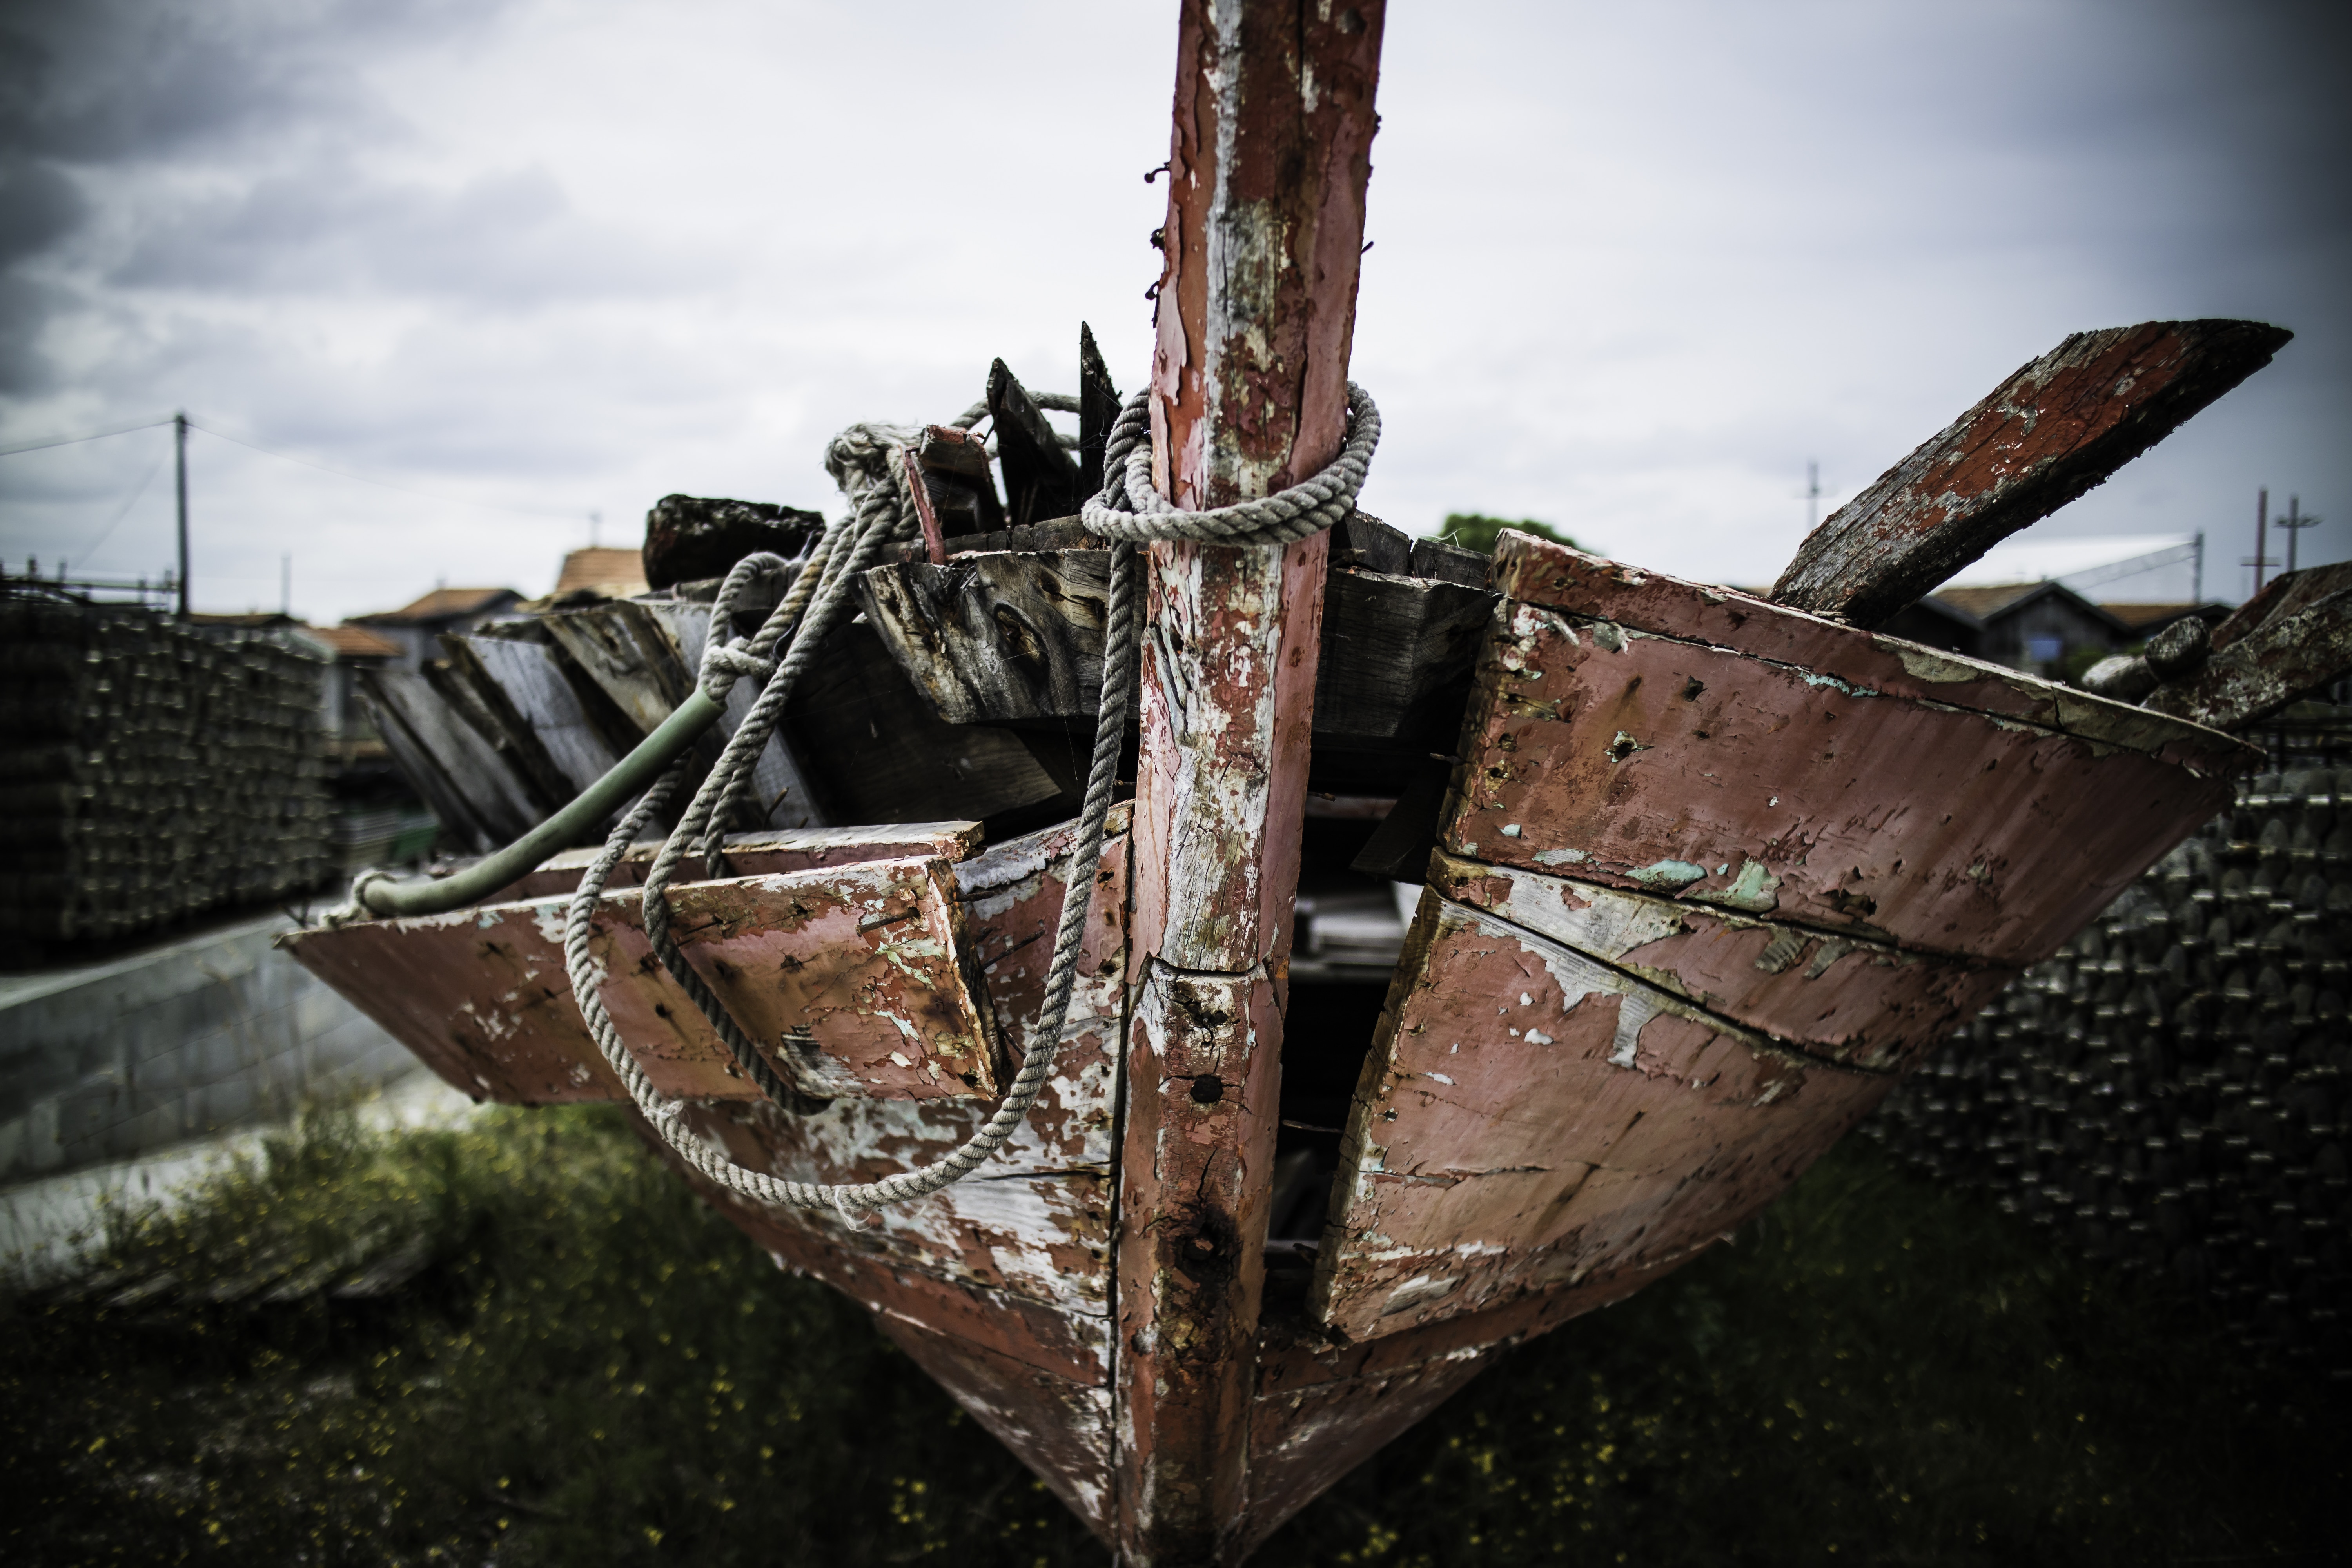 Разбившаяся лодка. Старый корабль. Сломанный корабль. Поломанный корабль. Деревянные корабли поломанные.